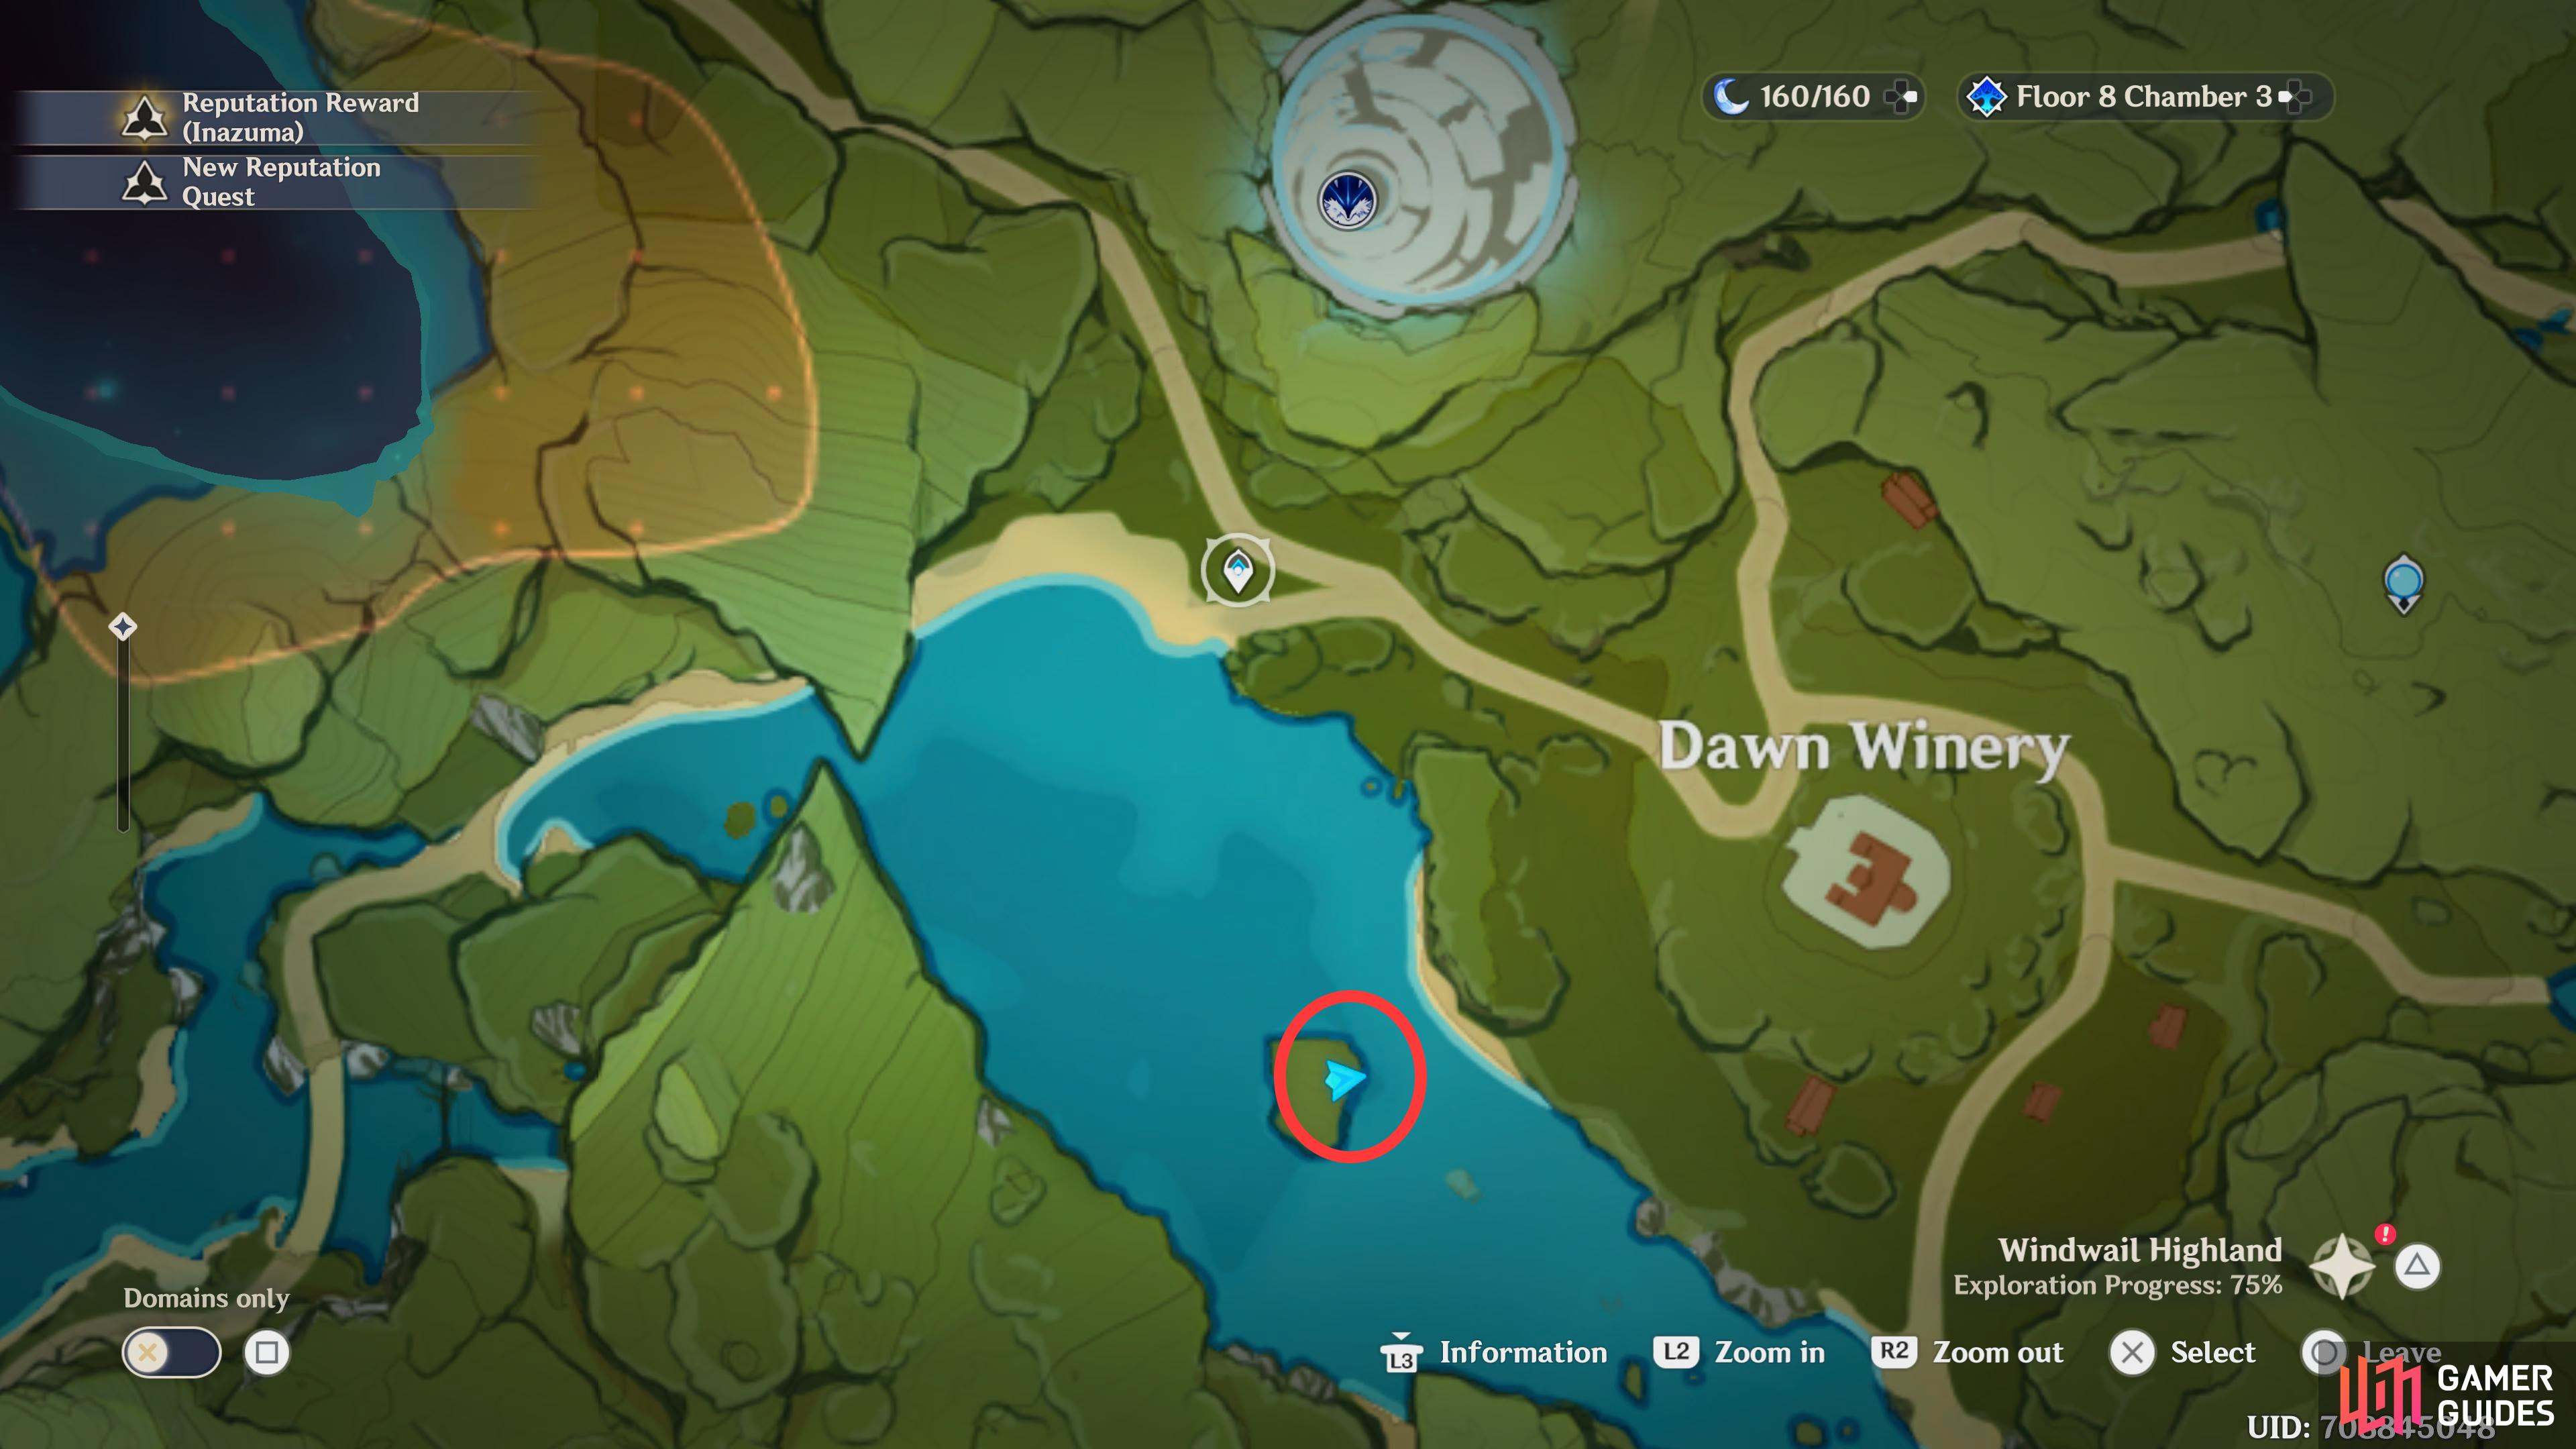 West Dawn Winery Point adalah di pulau kecil barat/barat daya dari Dawn Winery